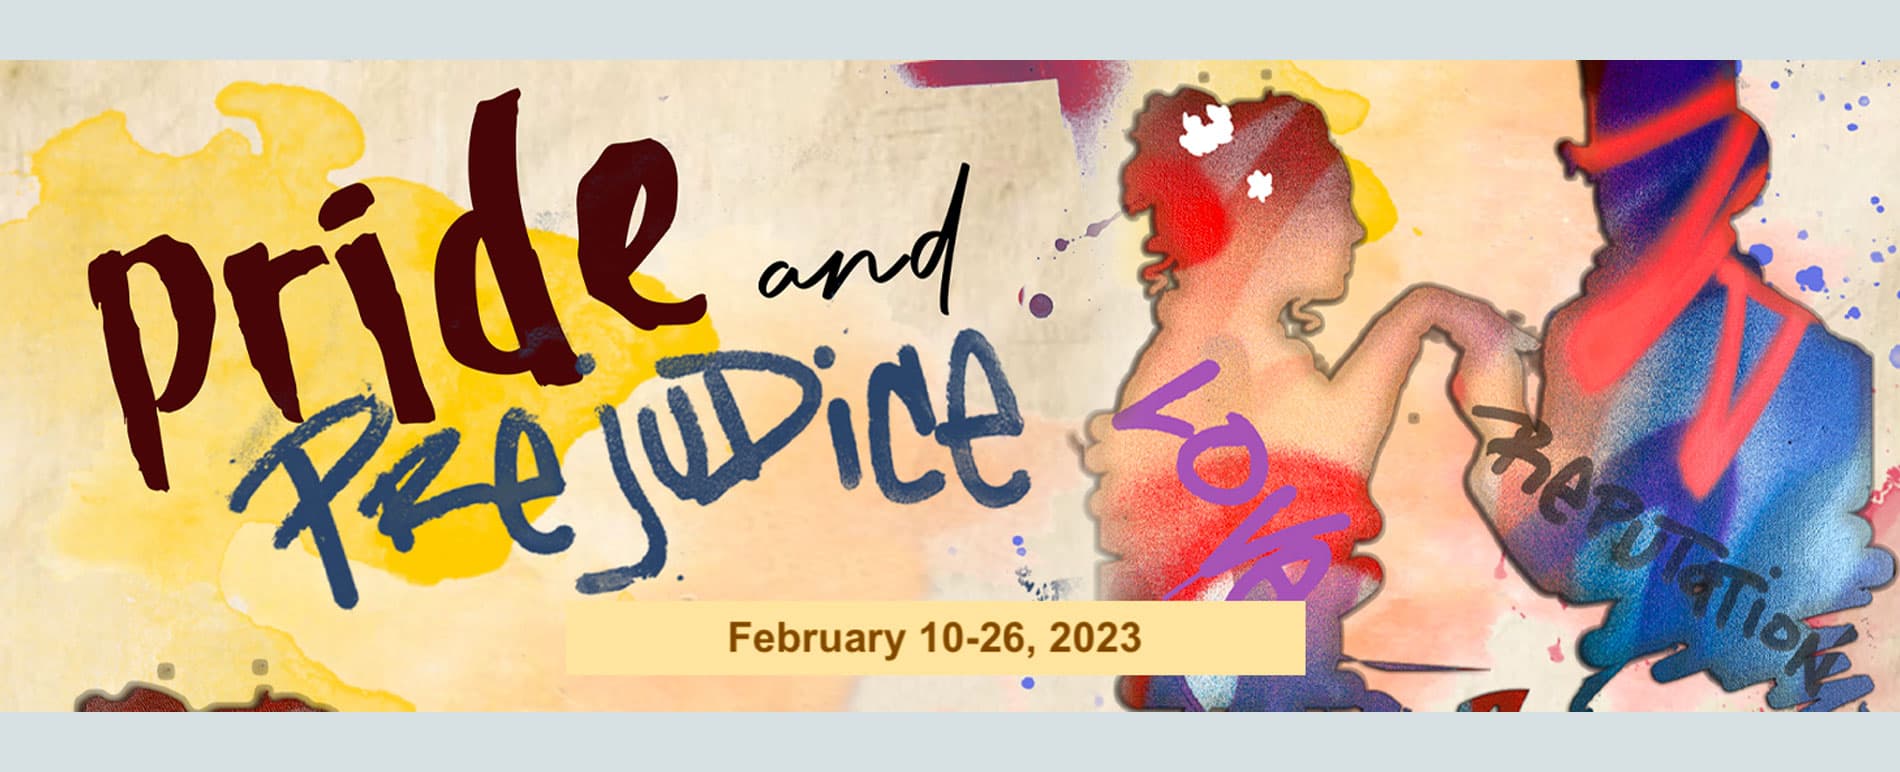 Pride & Prejudice illustrative banner, premiers February 10-26, 2023